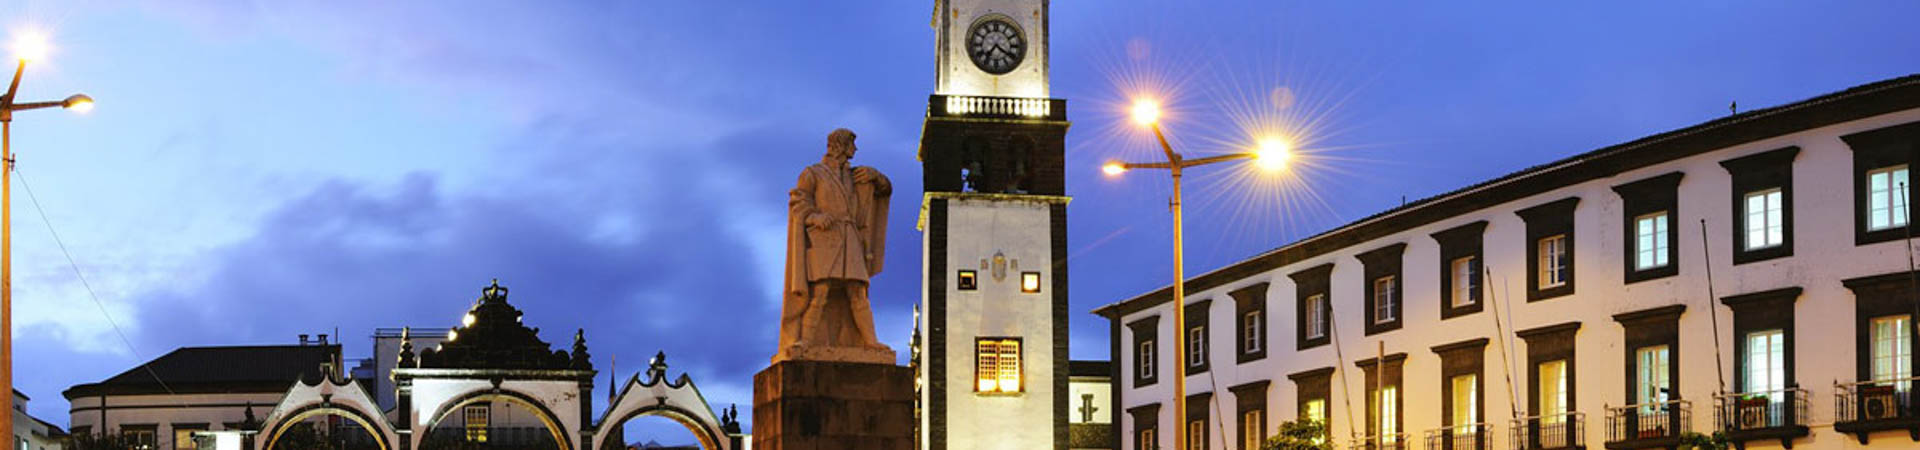 Ponta Del Gada, Portugal